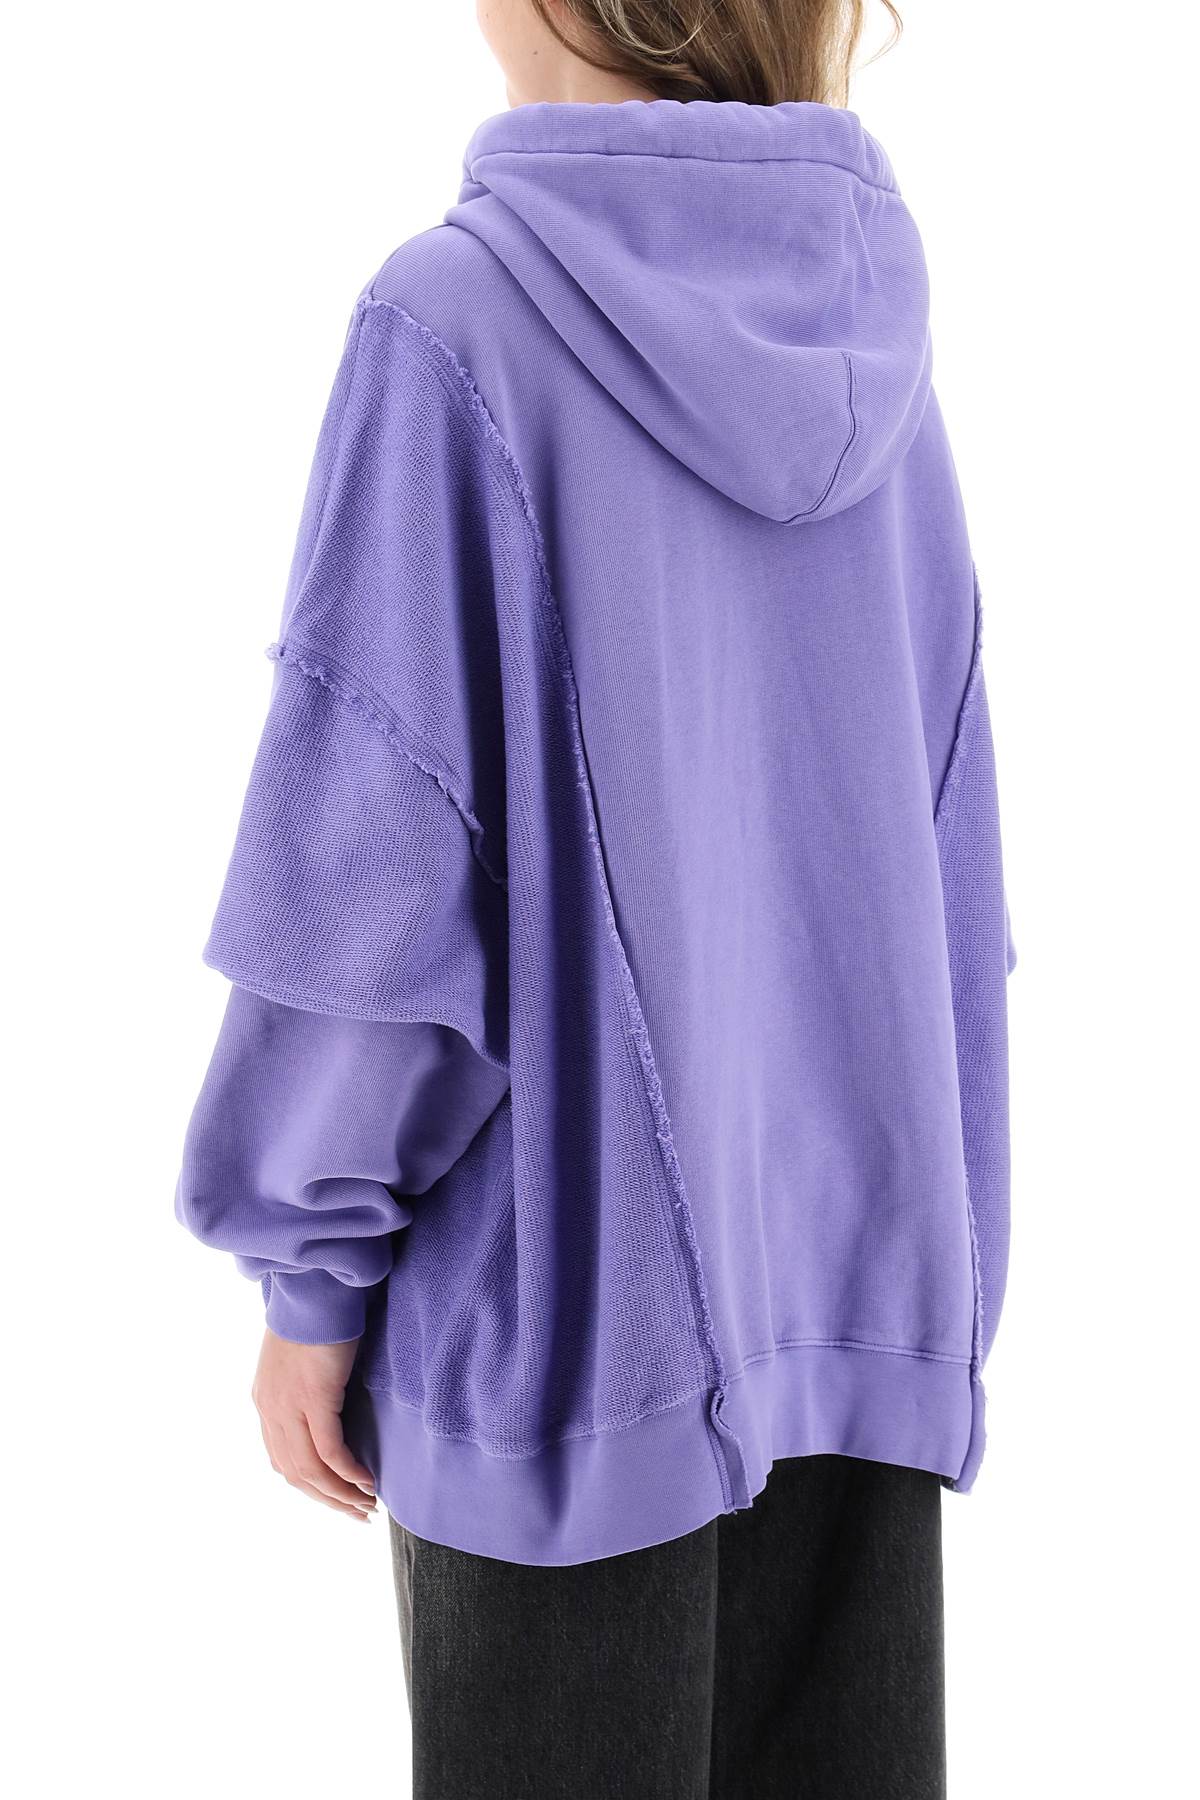 Shop Khrisjoy Oversized Hooded Sweatshirt In Wisteria (purple)